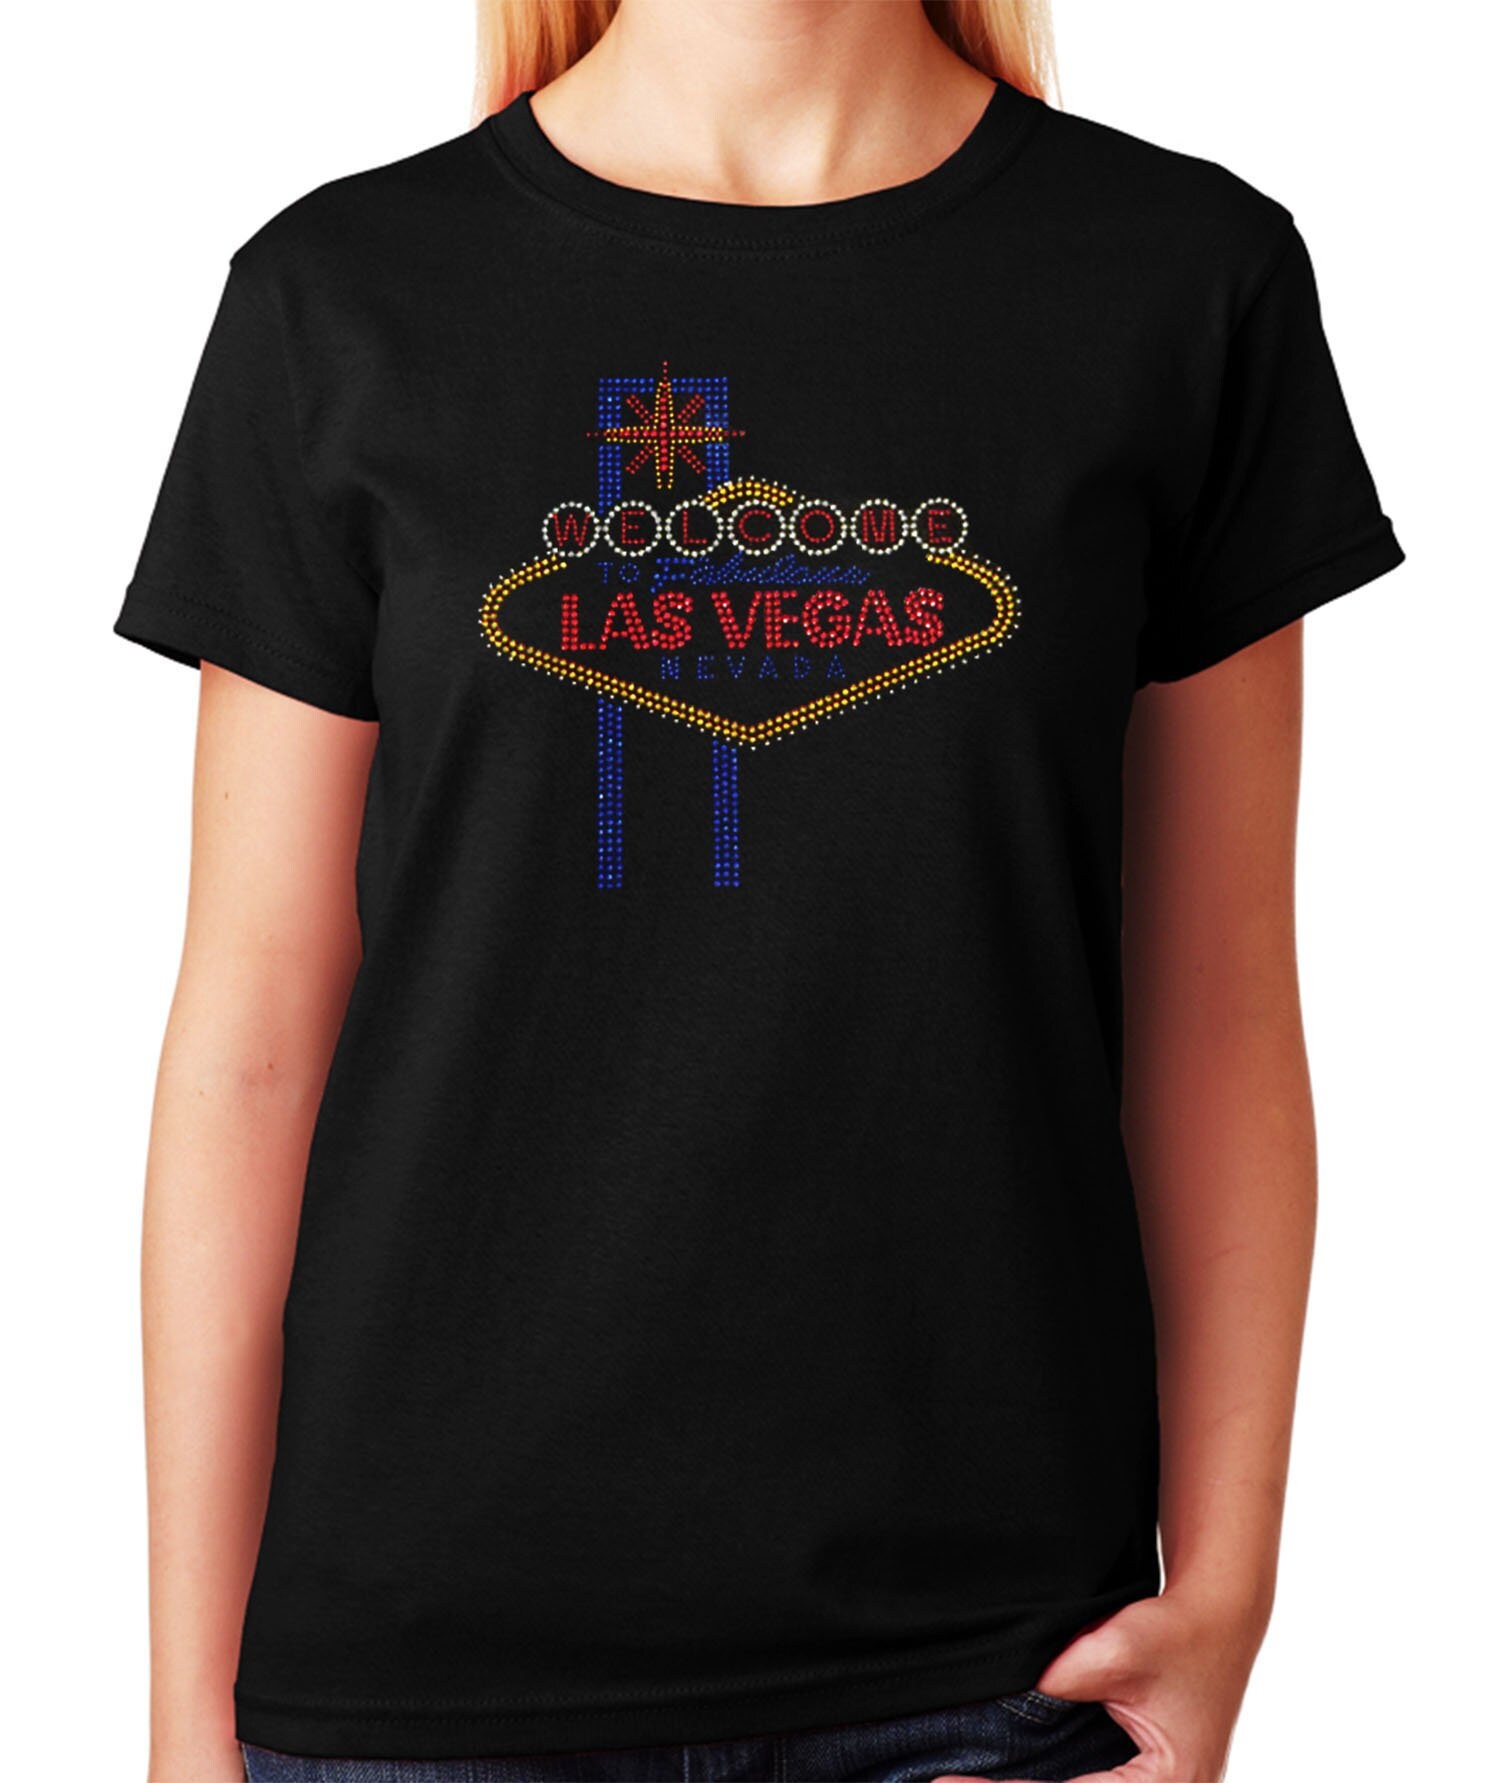 New Las Vegas Raiders Rhinestone New Womens Sizing VNeck T-shirt S thru 4X